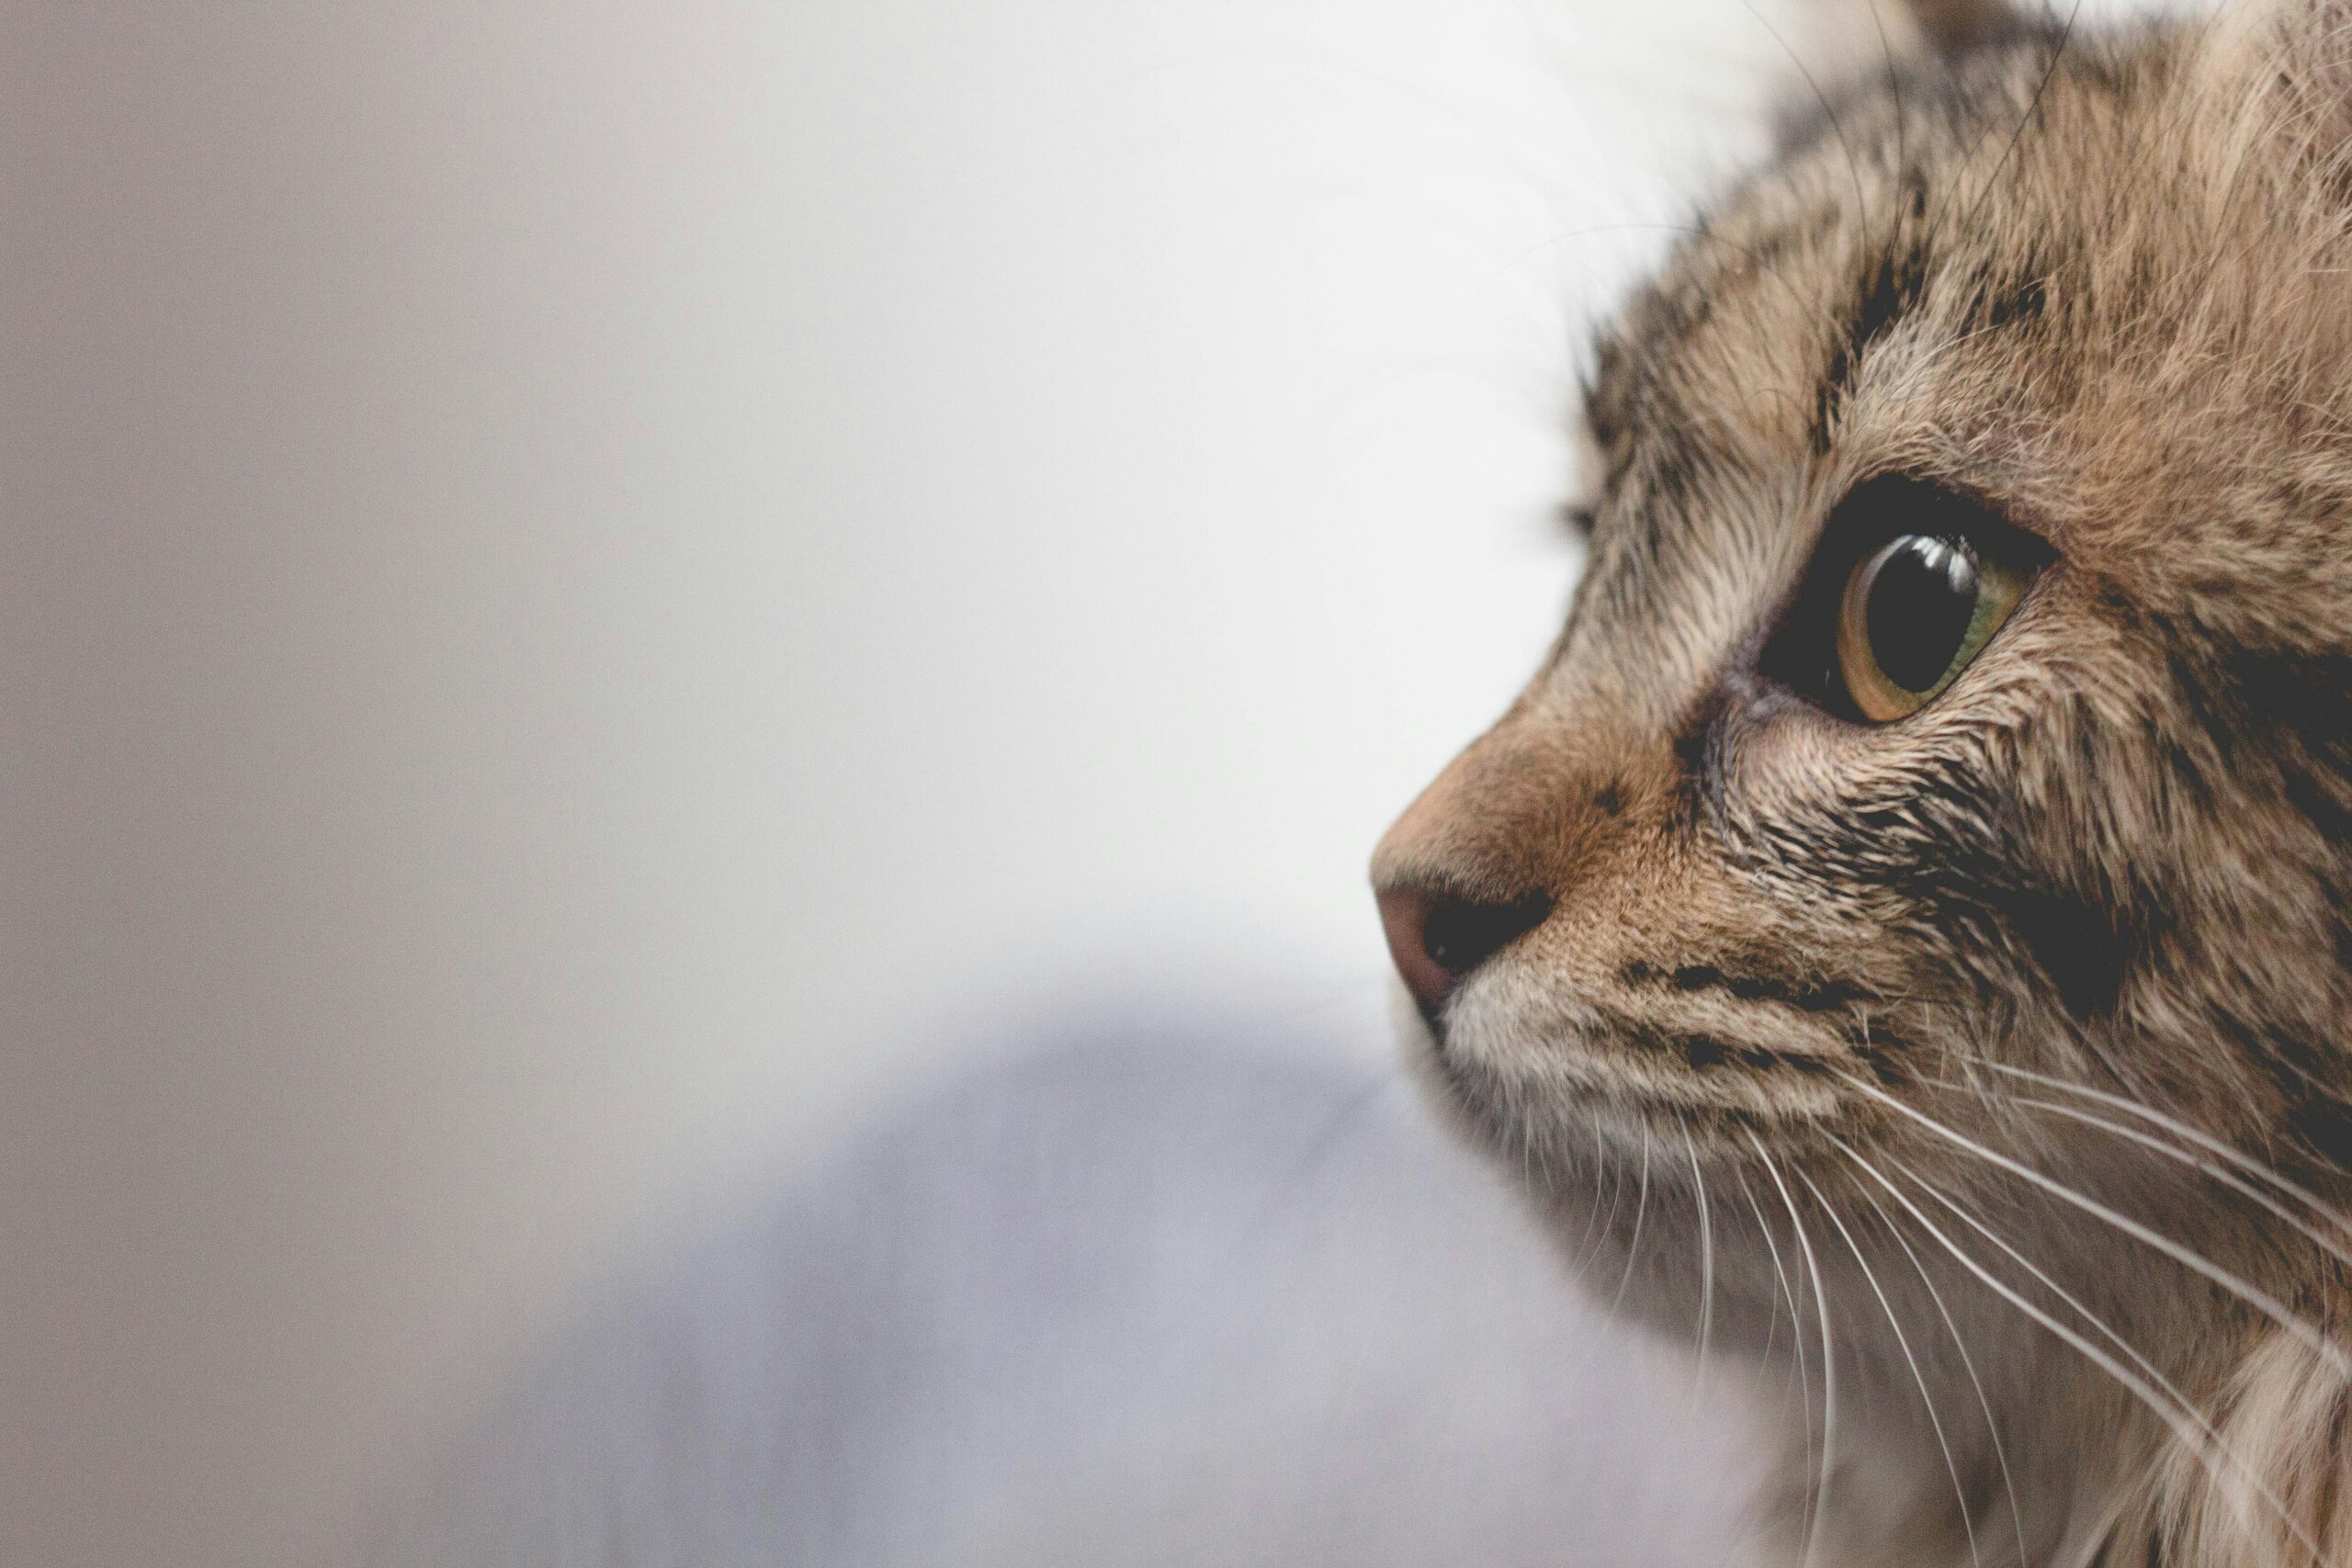 découvrez les causes possibles et les solutions pour calmer la toux chez les chats, ainsi que les symptômes associés au problème de toux chez les félins.